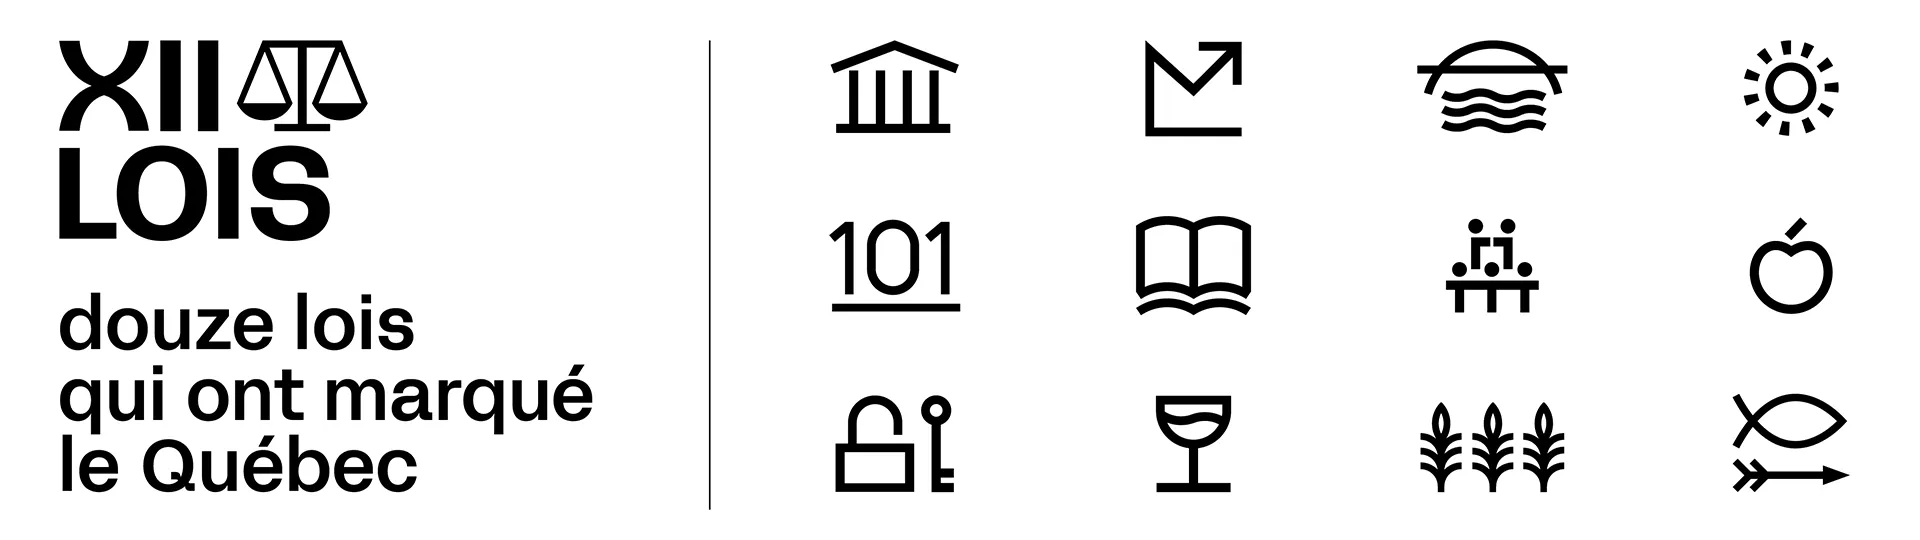 Douze lois qui ont marqué le Québec - Logo principal avec 12 pictogrammes sur fond blanc